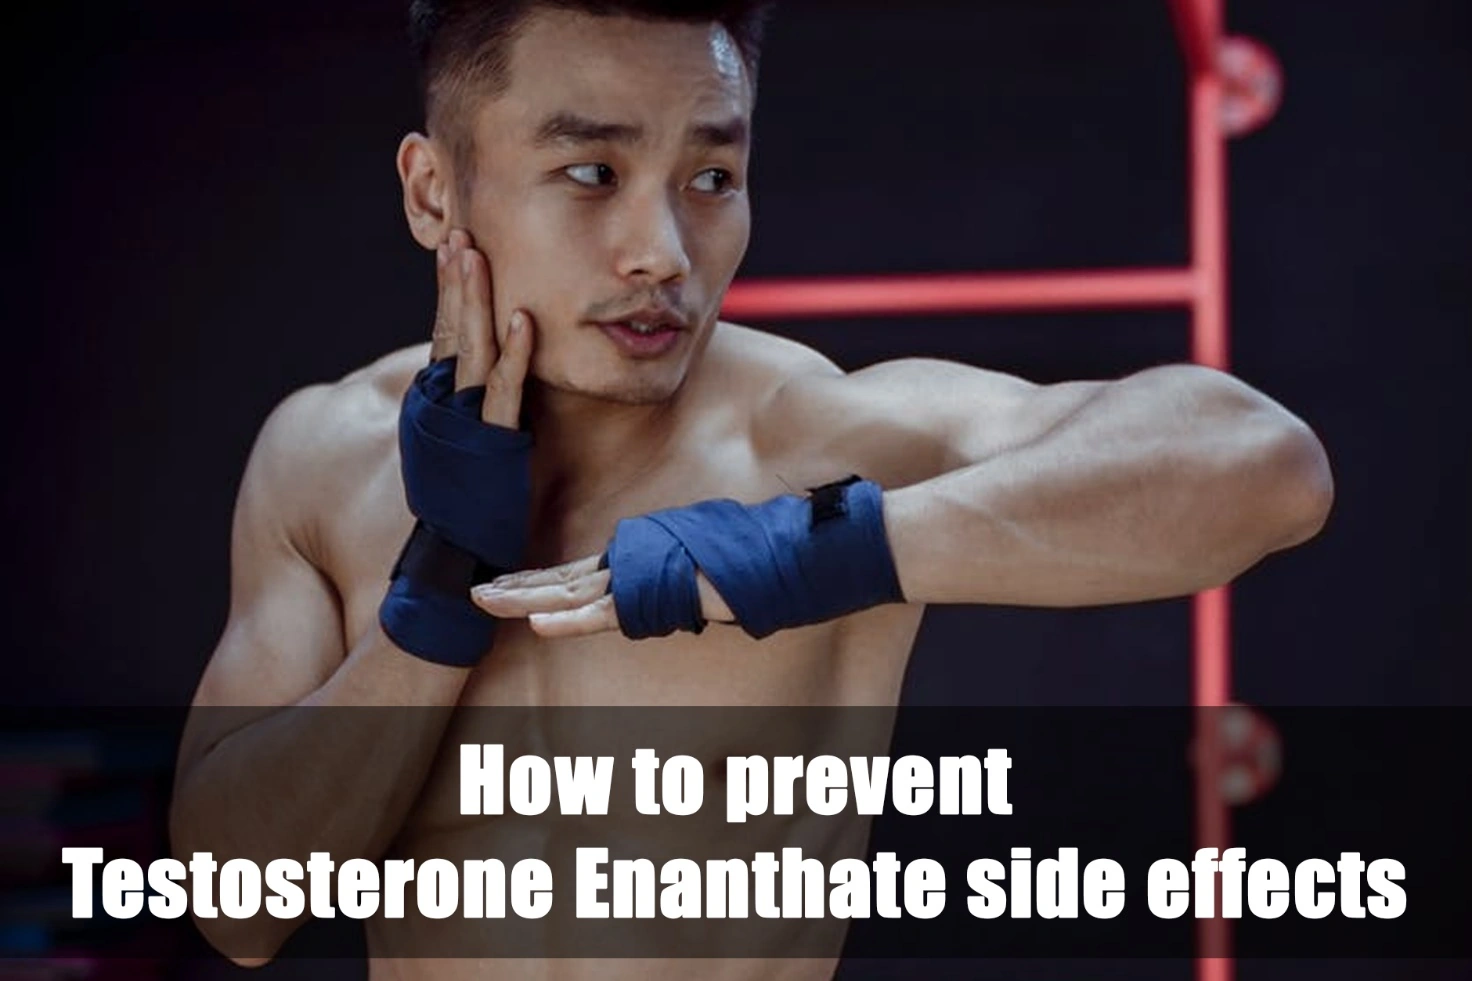 Prevenire gli effetti collaterali del testosterone enantato